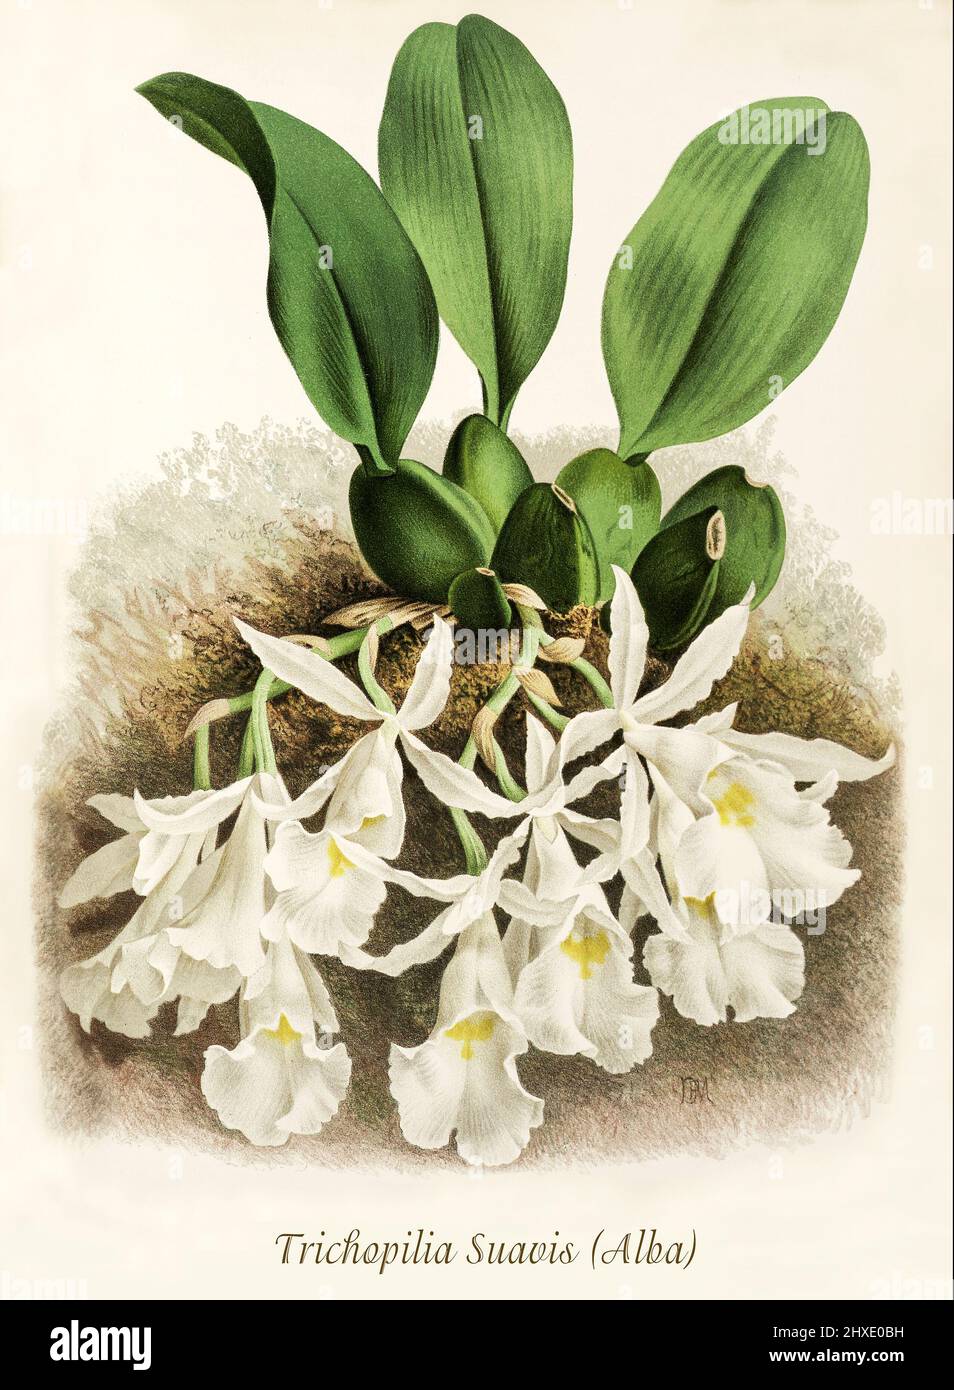 Trichopilia suavis est une espèce d'orchidée trouvée de l'Amérique centrale à la Colombie. Les plantes fleuriront au printemps et en hiver à des températures chaudes intermédiaires. D'Iconographie des Orchidées, un magazine d'illustrations botaniques publié par Jean Jules Linden (1817-1898) était un botaniste, explorateur et horticulteur belge spécialisé dans les orchidées. Banque D'Images